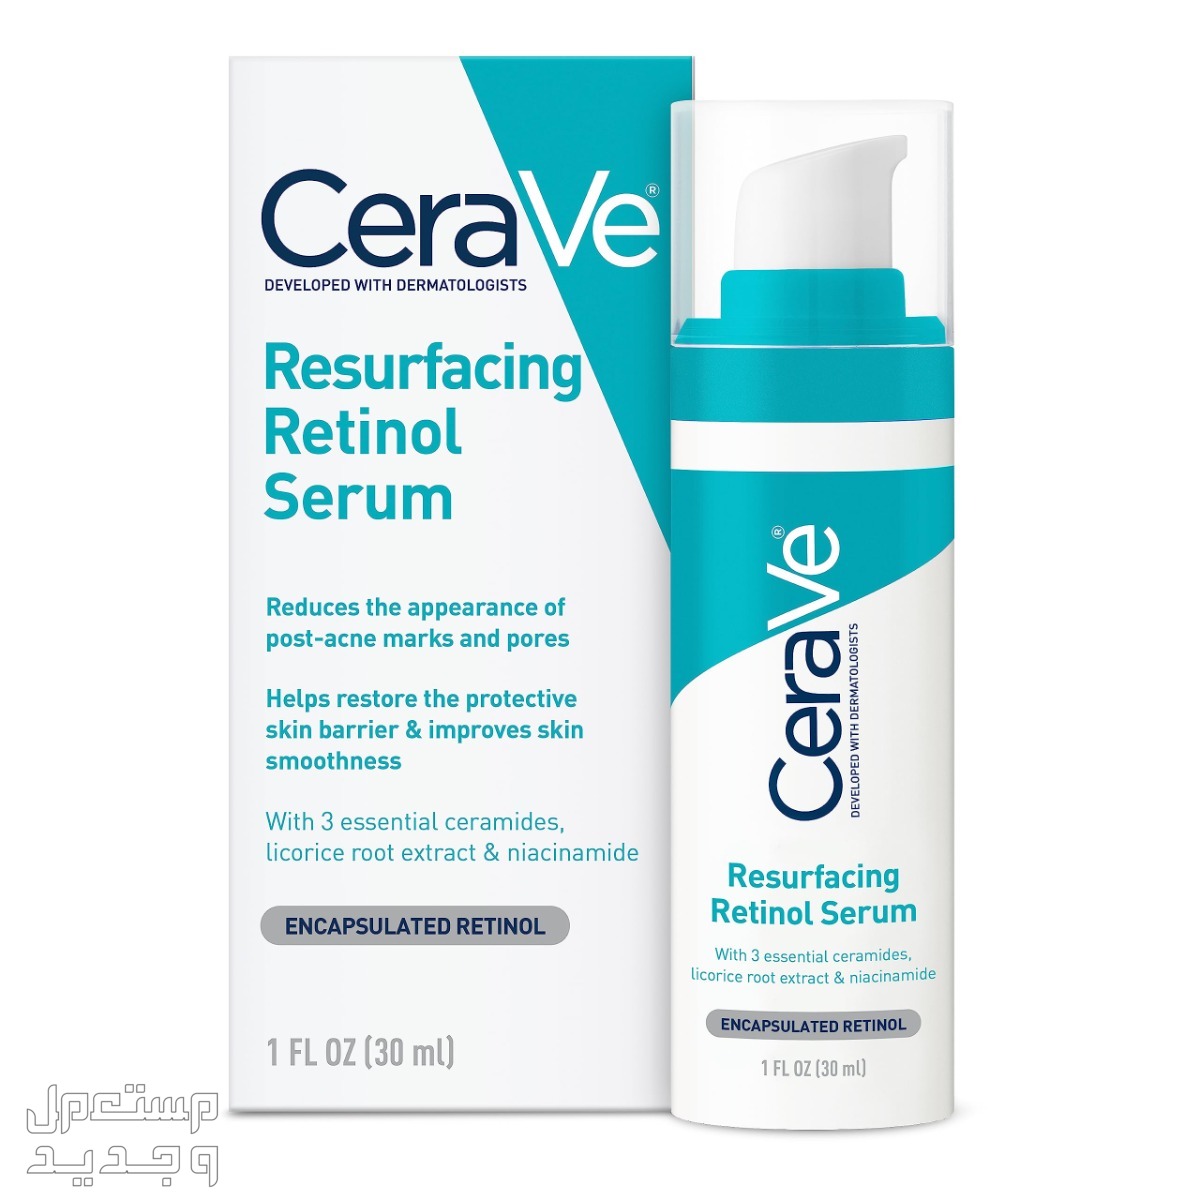 أفضل سيروم ليلي للعناية بالبشرة لعام 2023 في الإمارات العربية المتحدة سيروم ليلي من CeraVe Anti Aging Retinol Serum